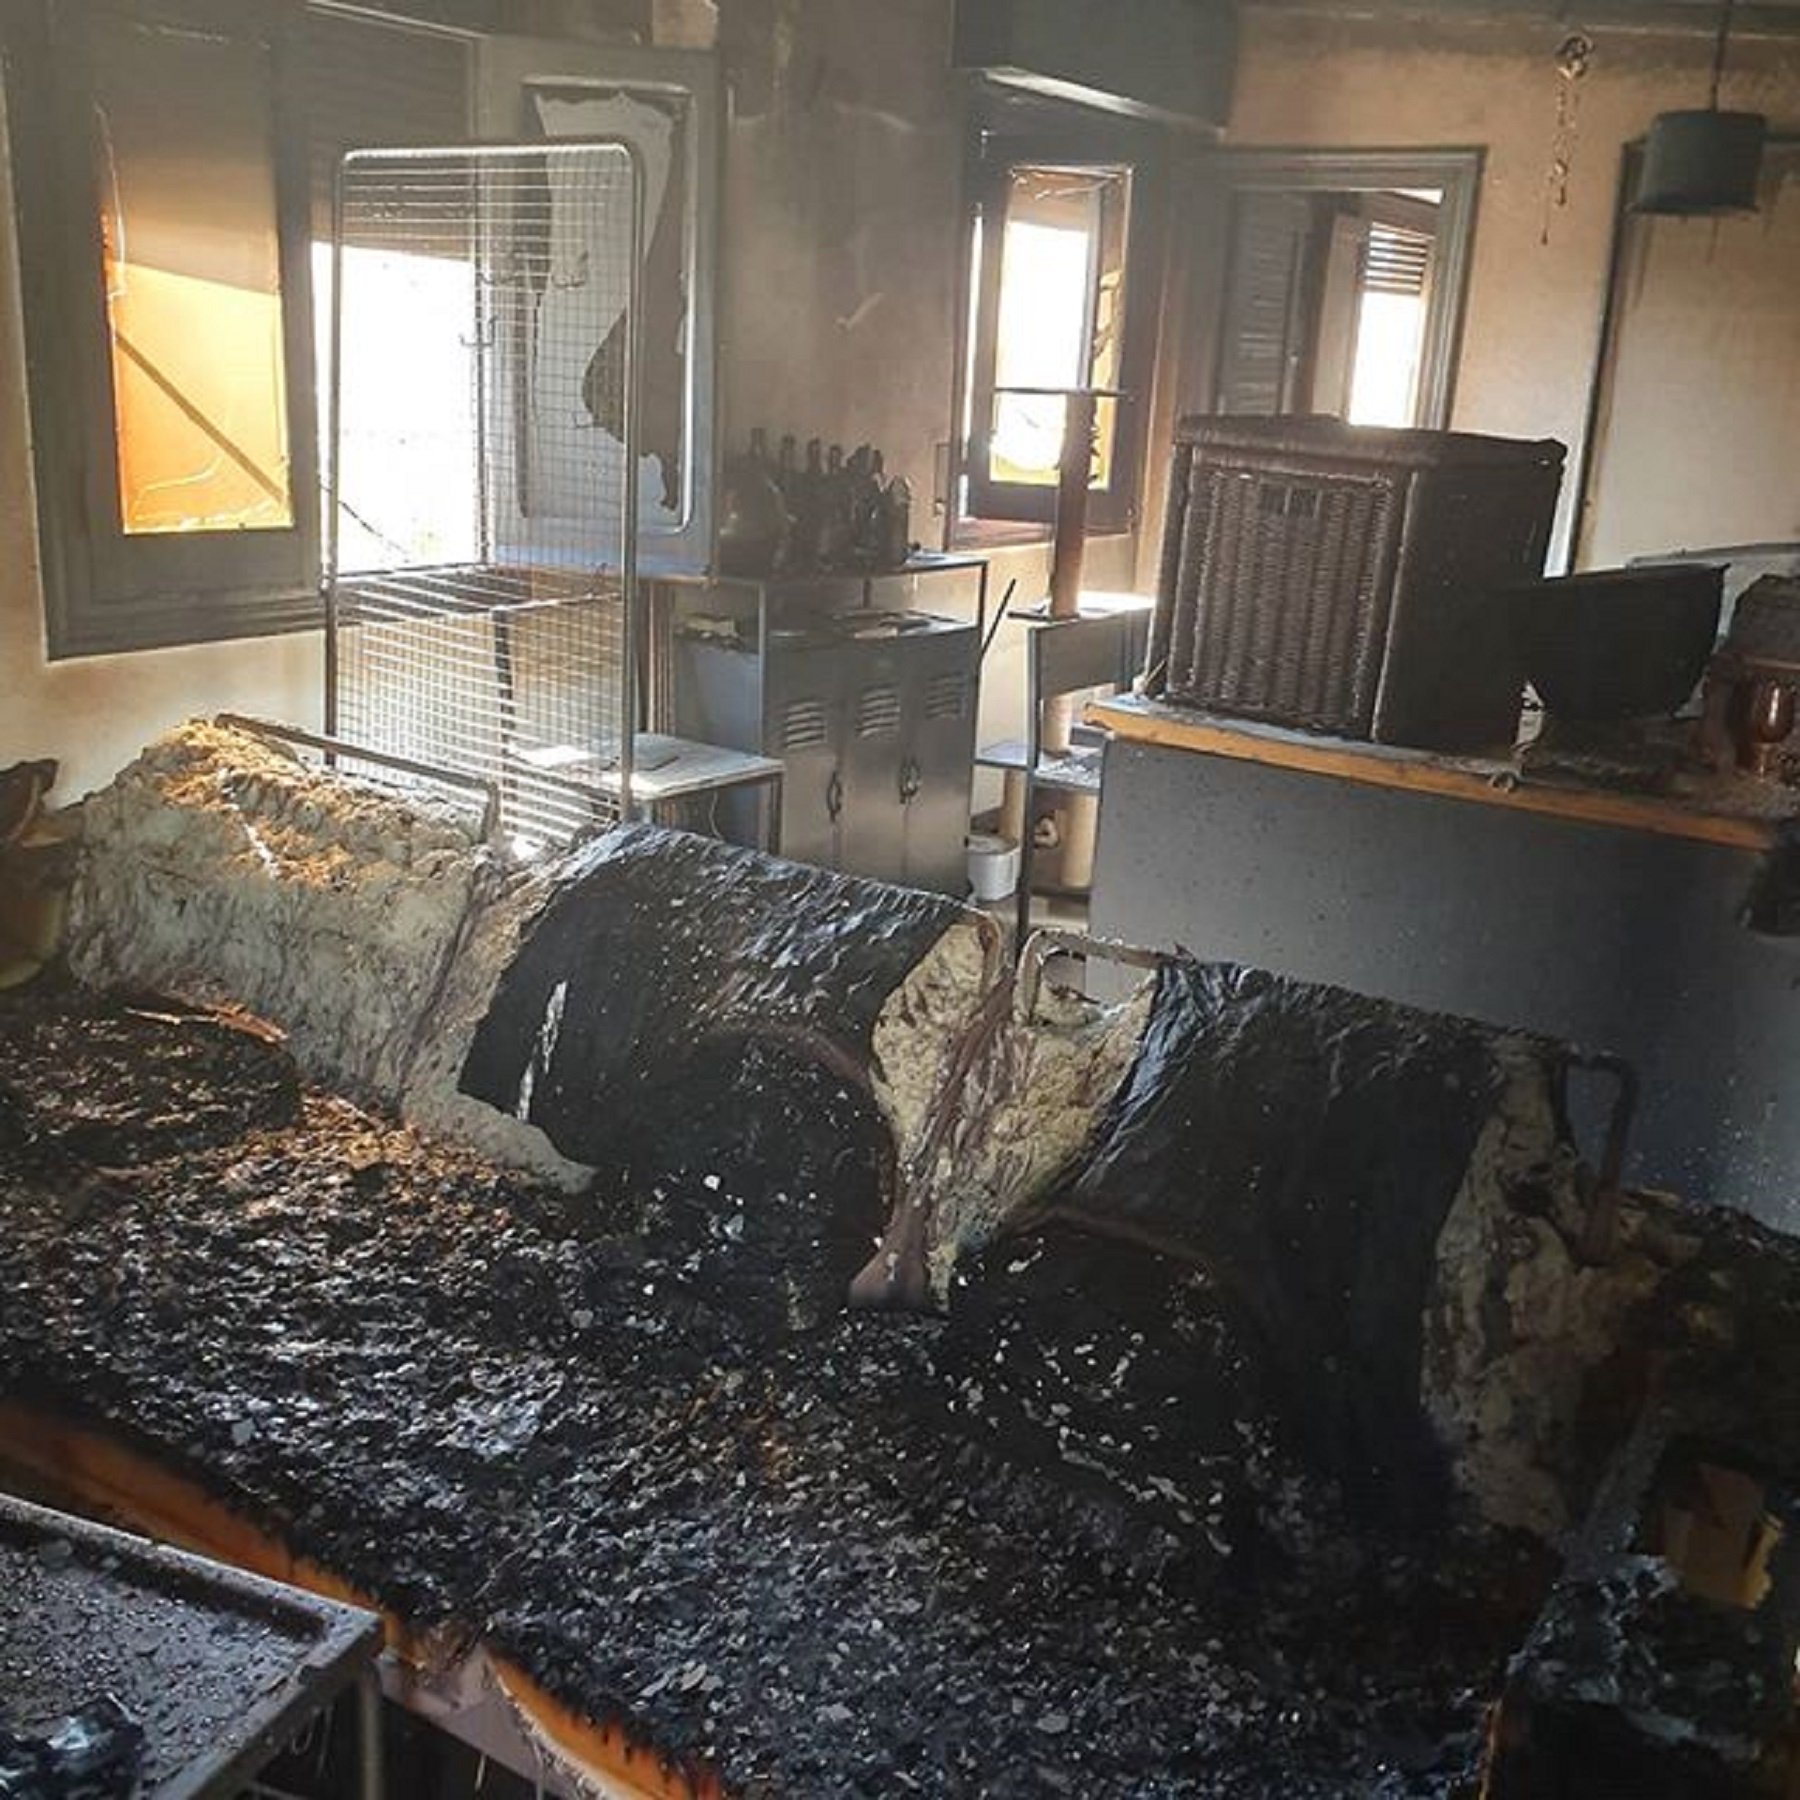 El verano infernal de FortFast: un incendio arrasa su casa y mata a sus gatas